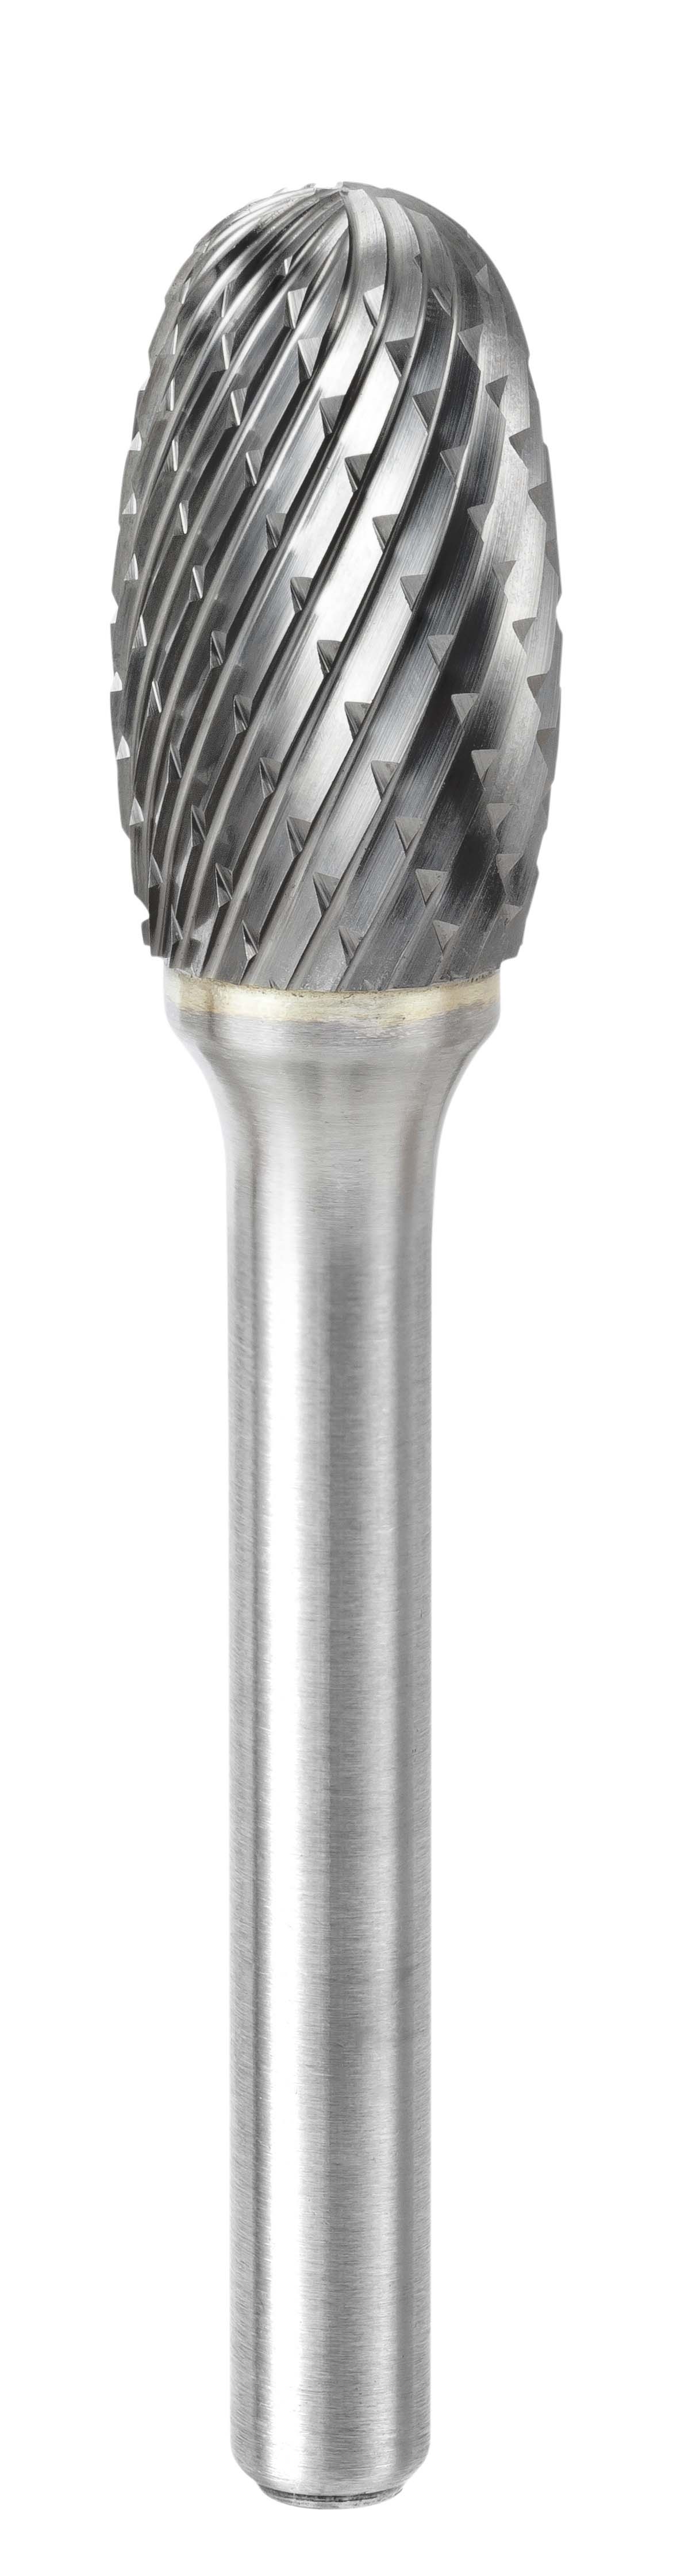 HF 100 M Fraises carbure Klingspor 12,7 x 22 x 6 mm denture croisée